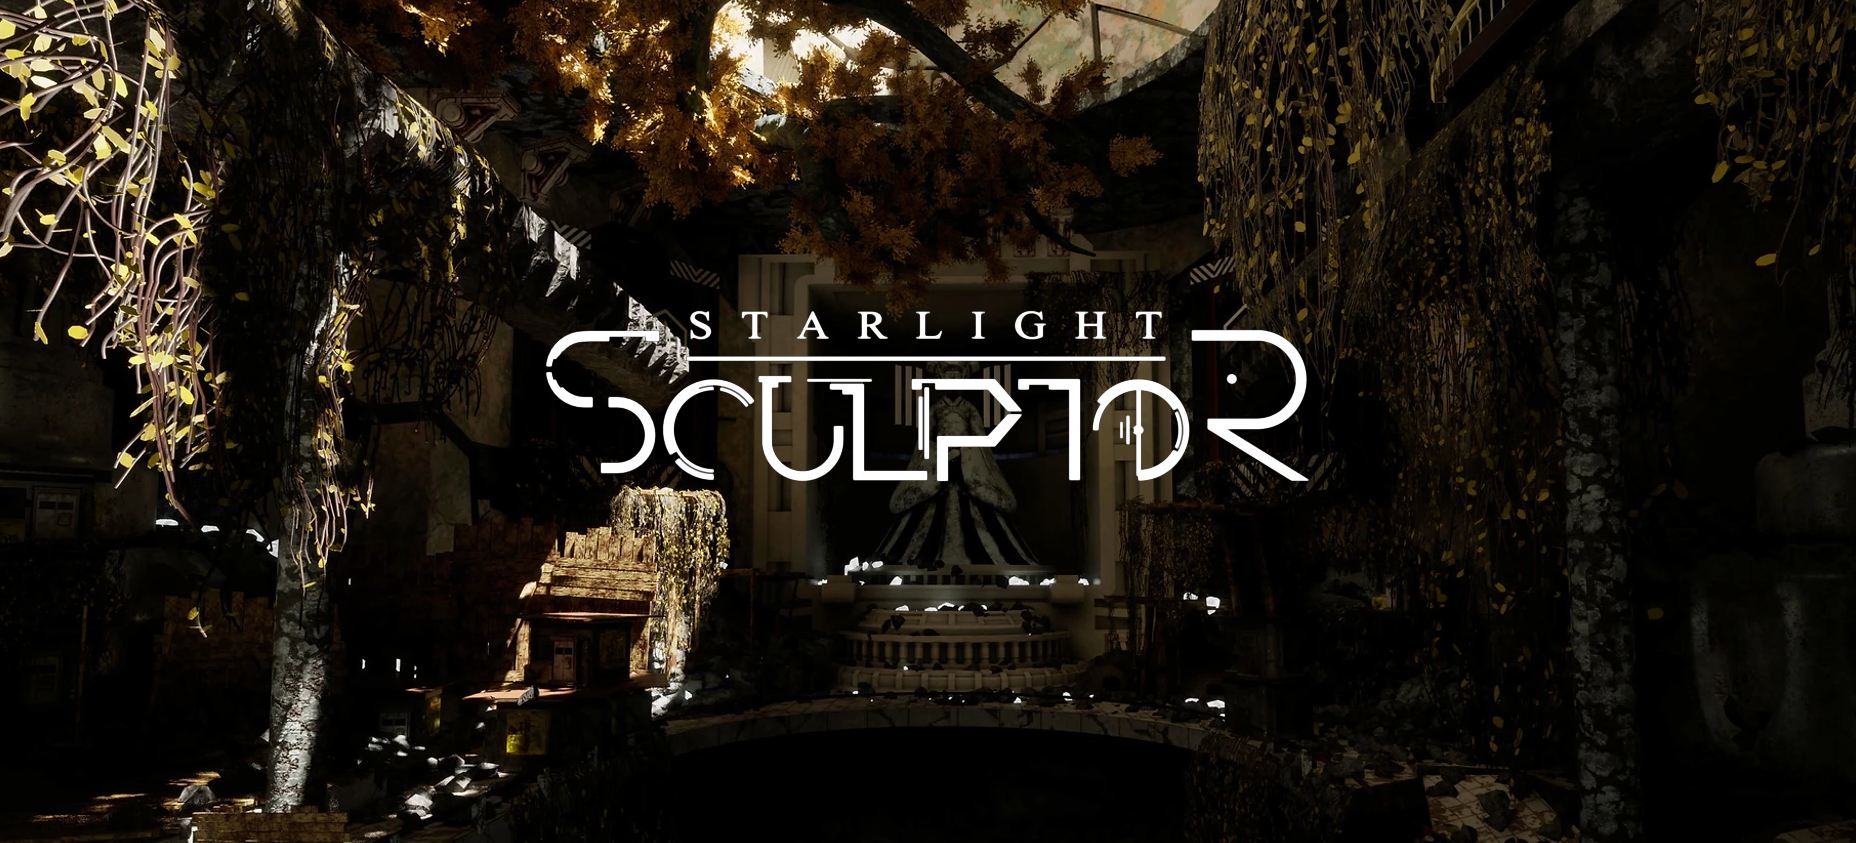 Starlight Sculptor